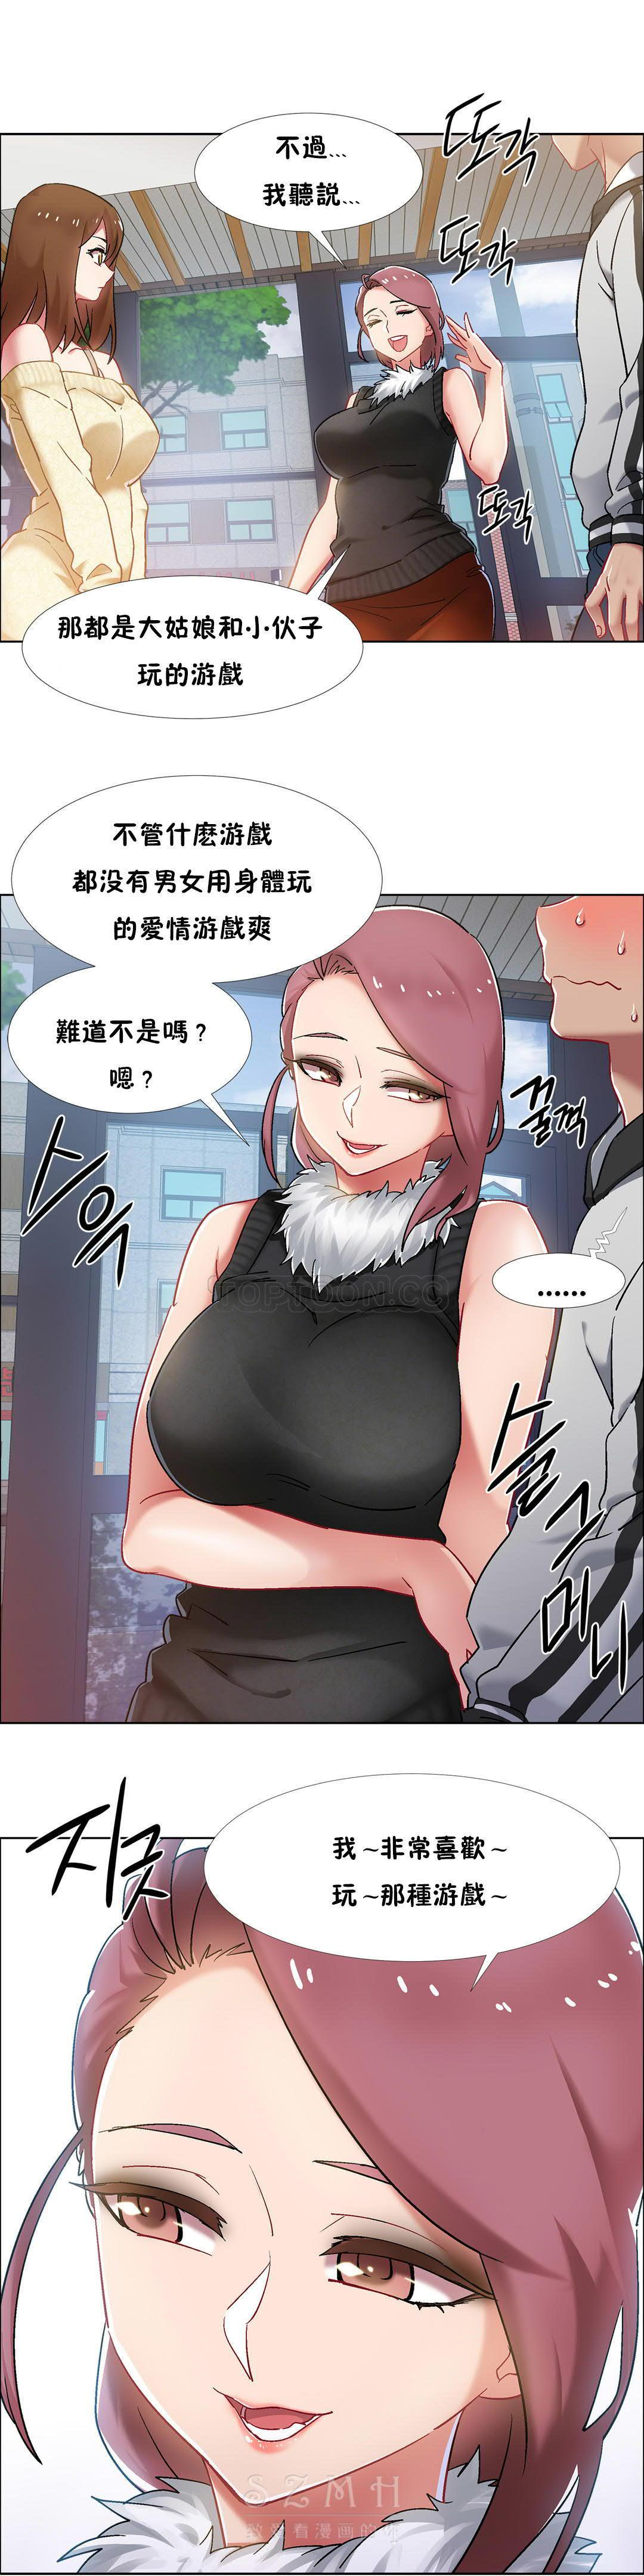 Bitch [Studio Wannabe] Rental Girls | 出租女郎 Ch. 33-58 [Chinese] 第二季 完结 Big Booty - Page 6